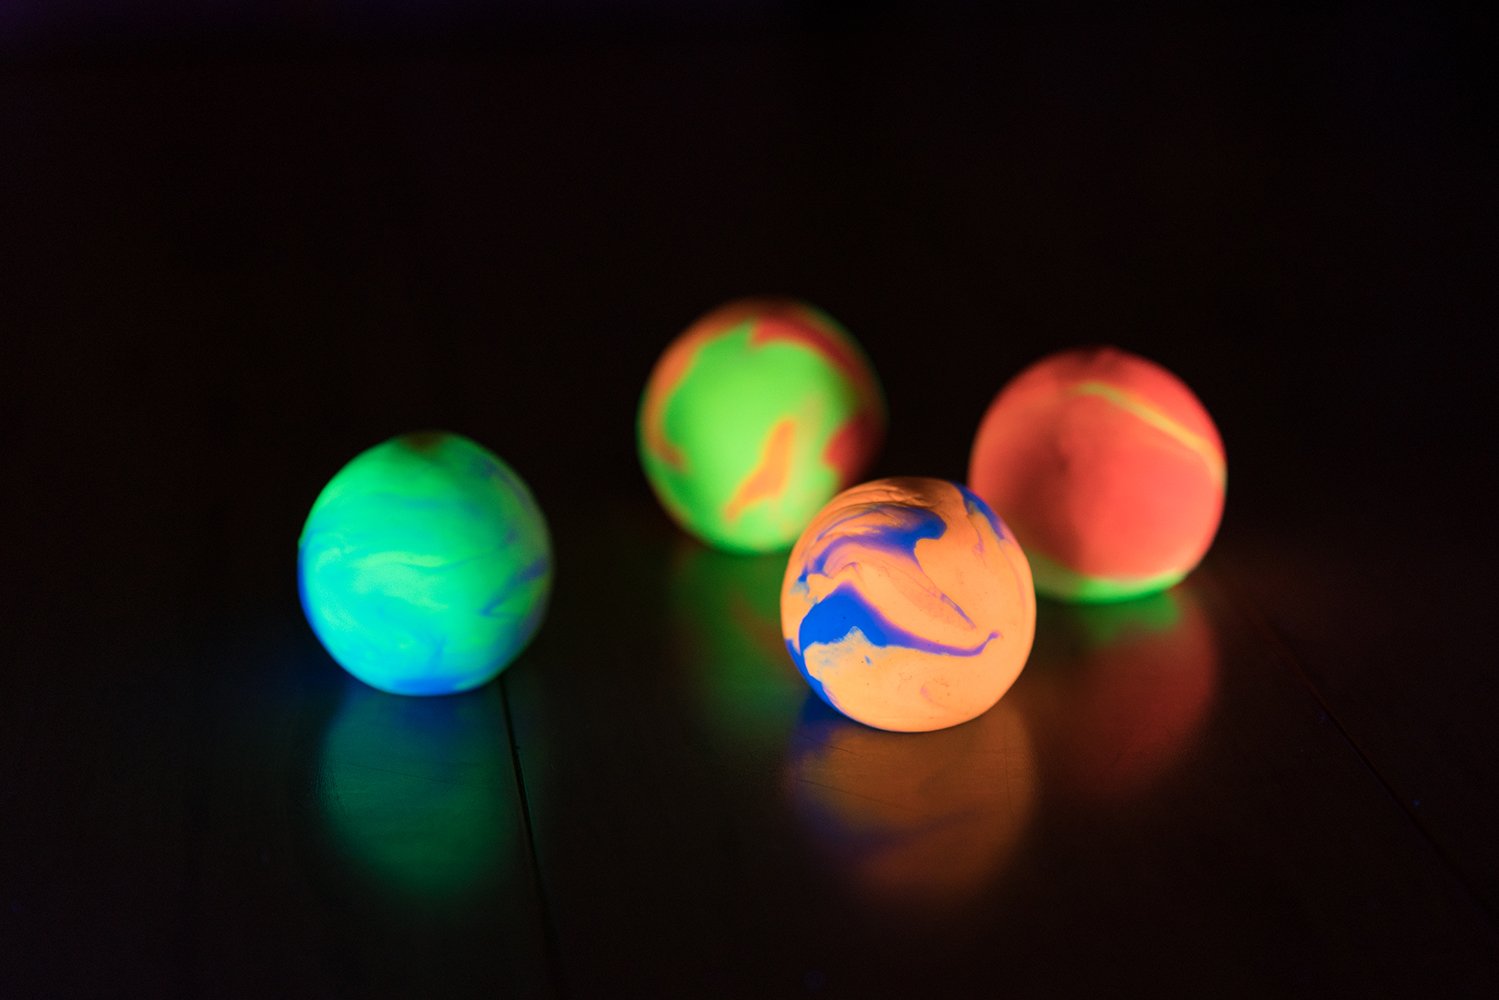 DIY SLIME-BOUNCY BALL KIT - Make Your Own Slime or Light Up Bouncy Balls